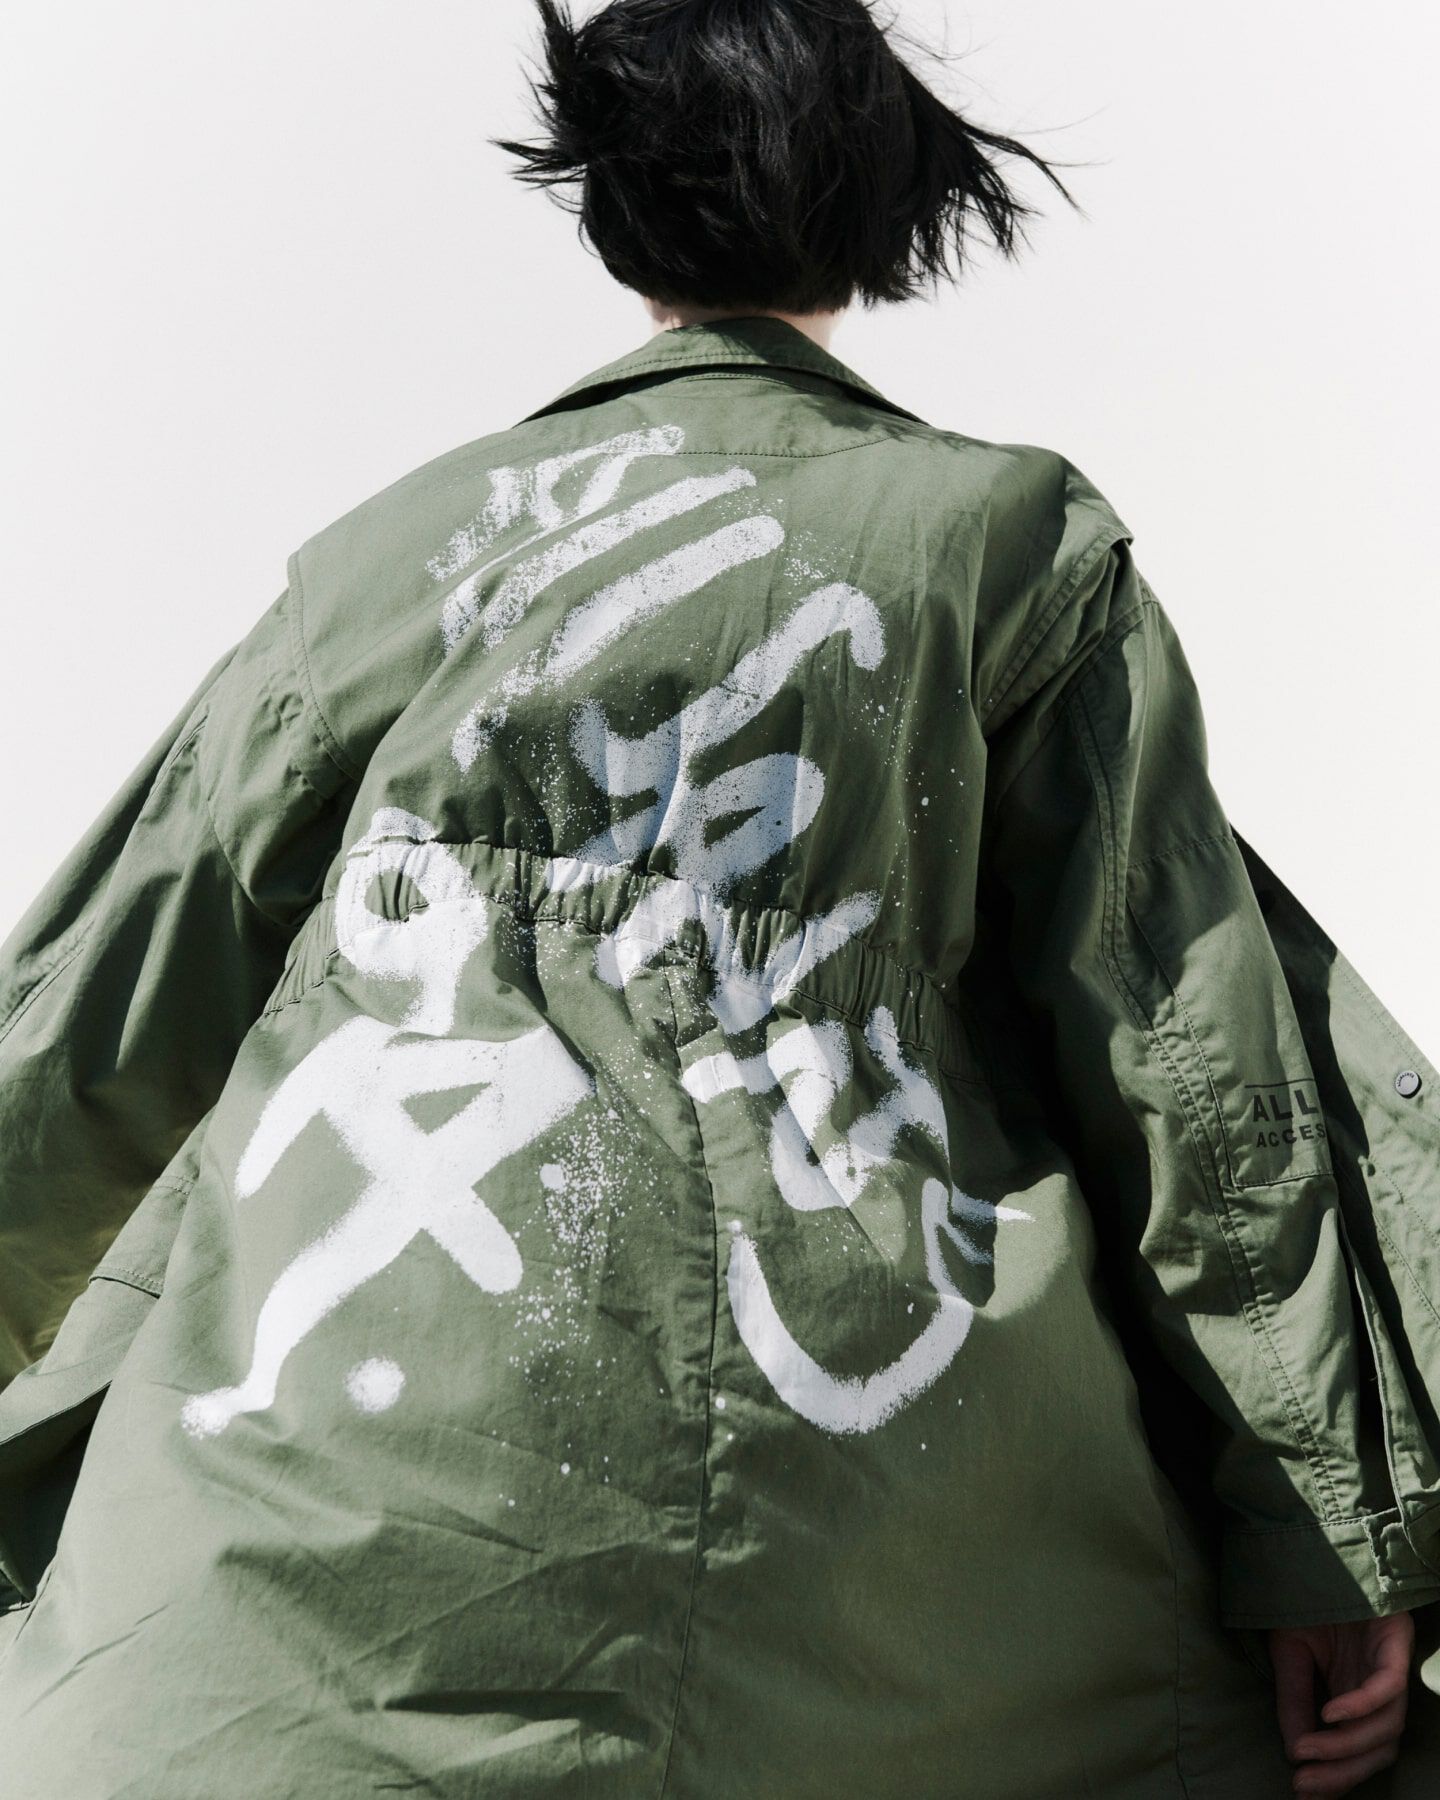 Une femme portant une veste vert clair avec AllSaints 94 peint au graffiti sur le dos.